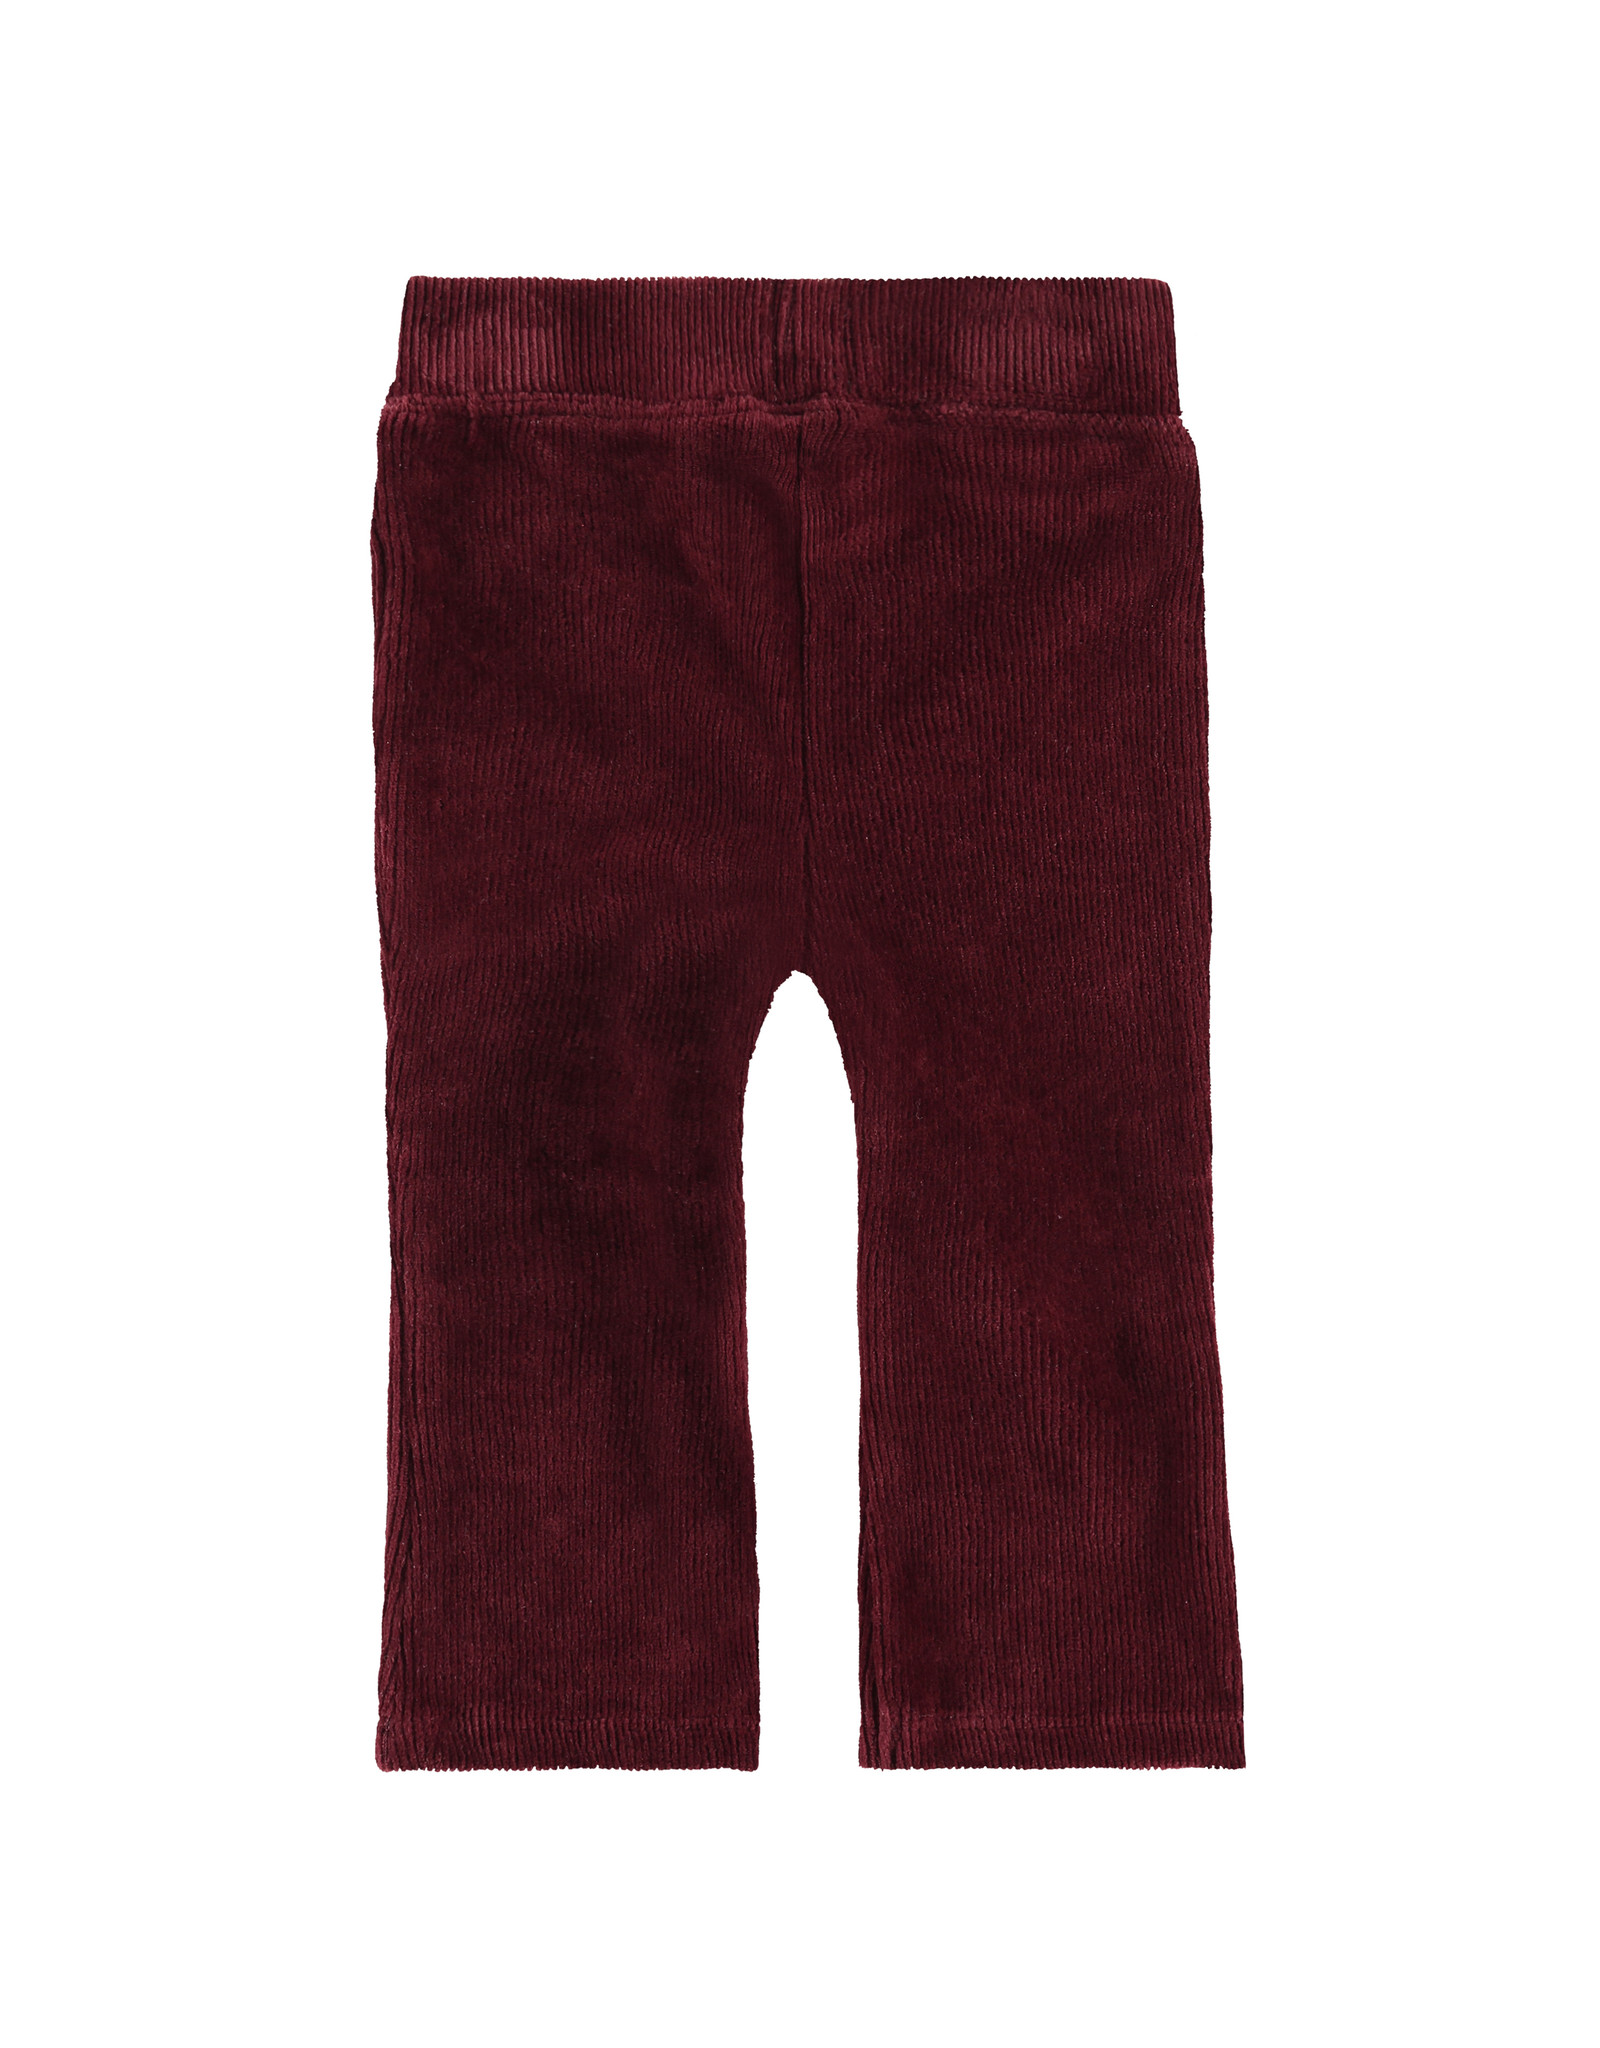 Babyface girls sweatpants, red velvet, BBE21608294